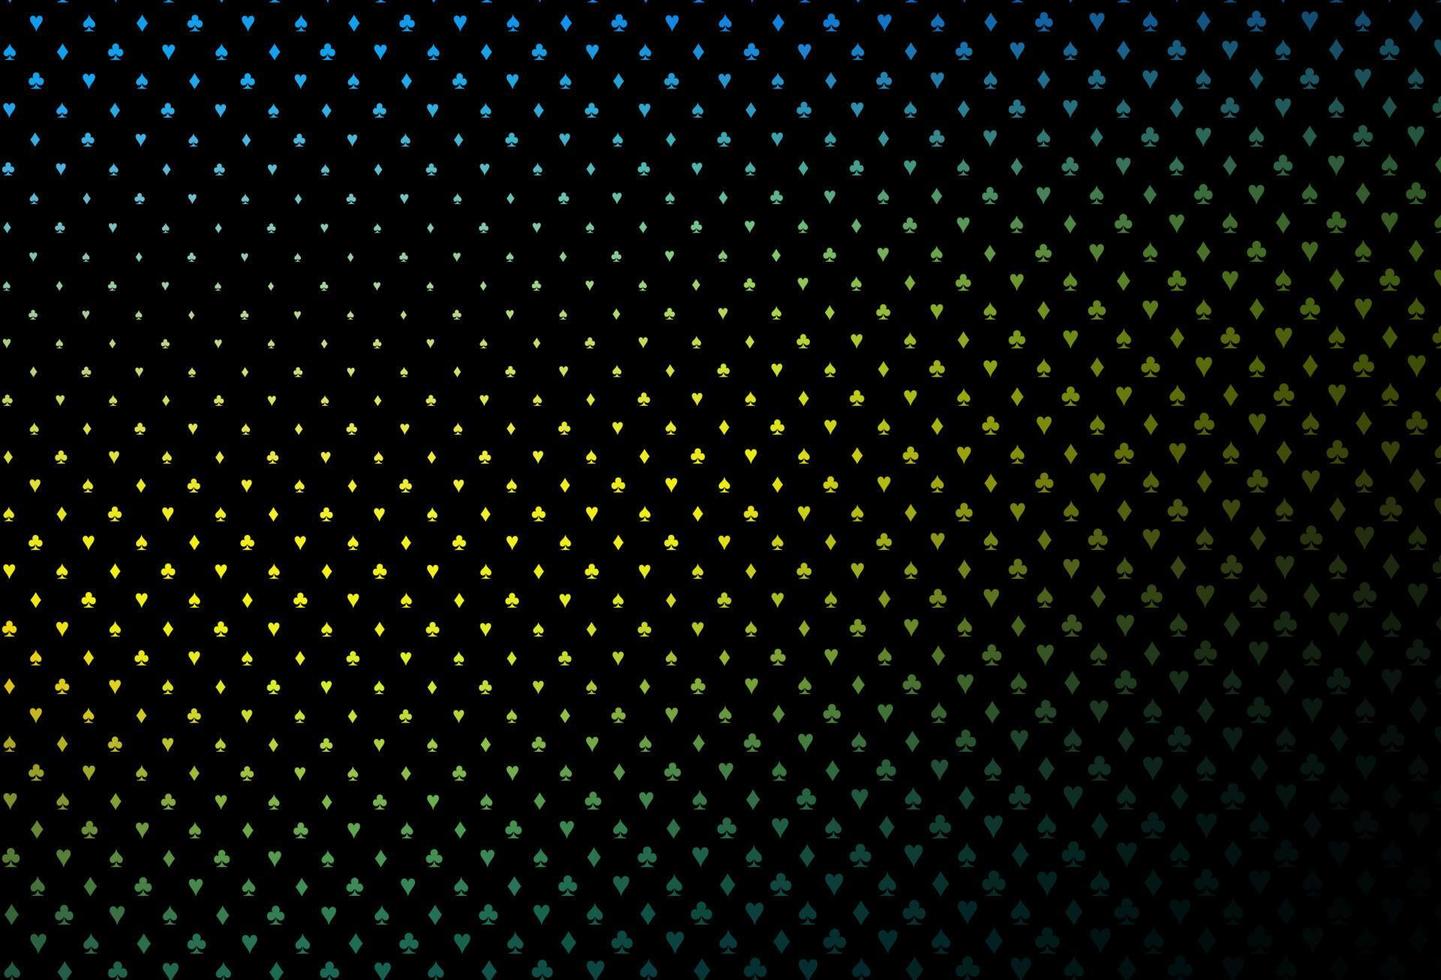 mörkblå, gul vektormall med pokersymboler. vektor